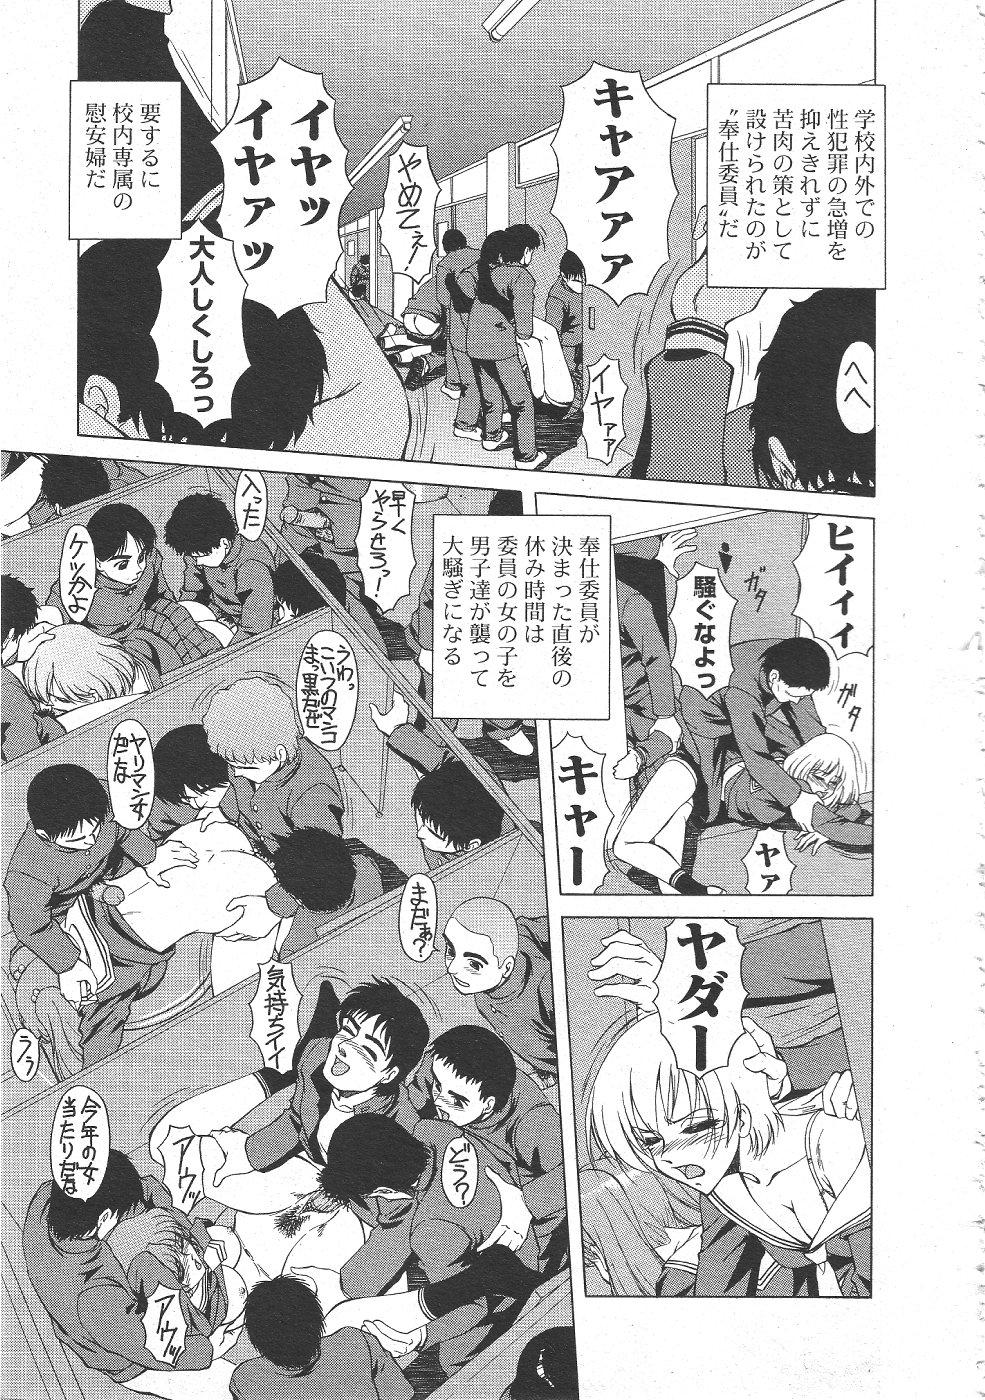 Gekkan Comic Muga 2004-06 Vol.10 316